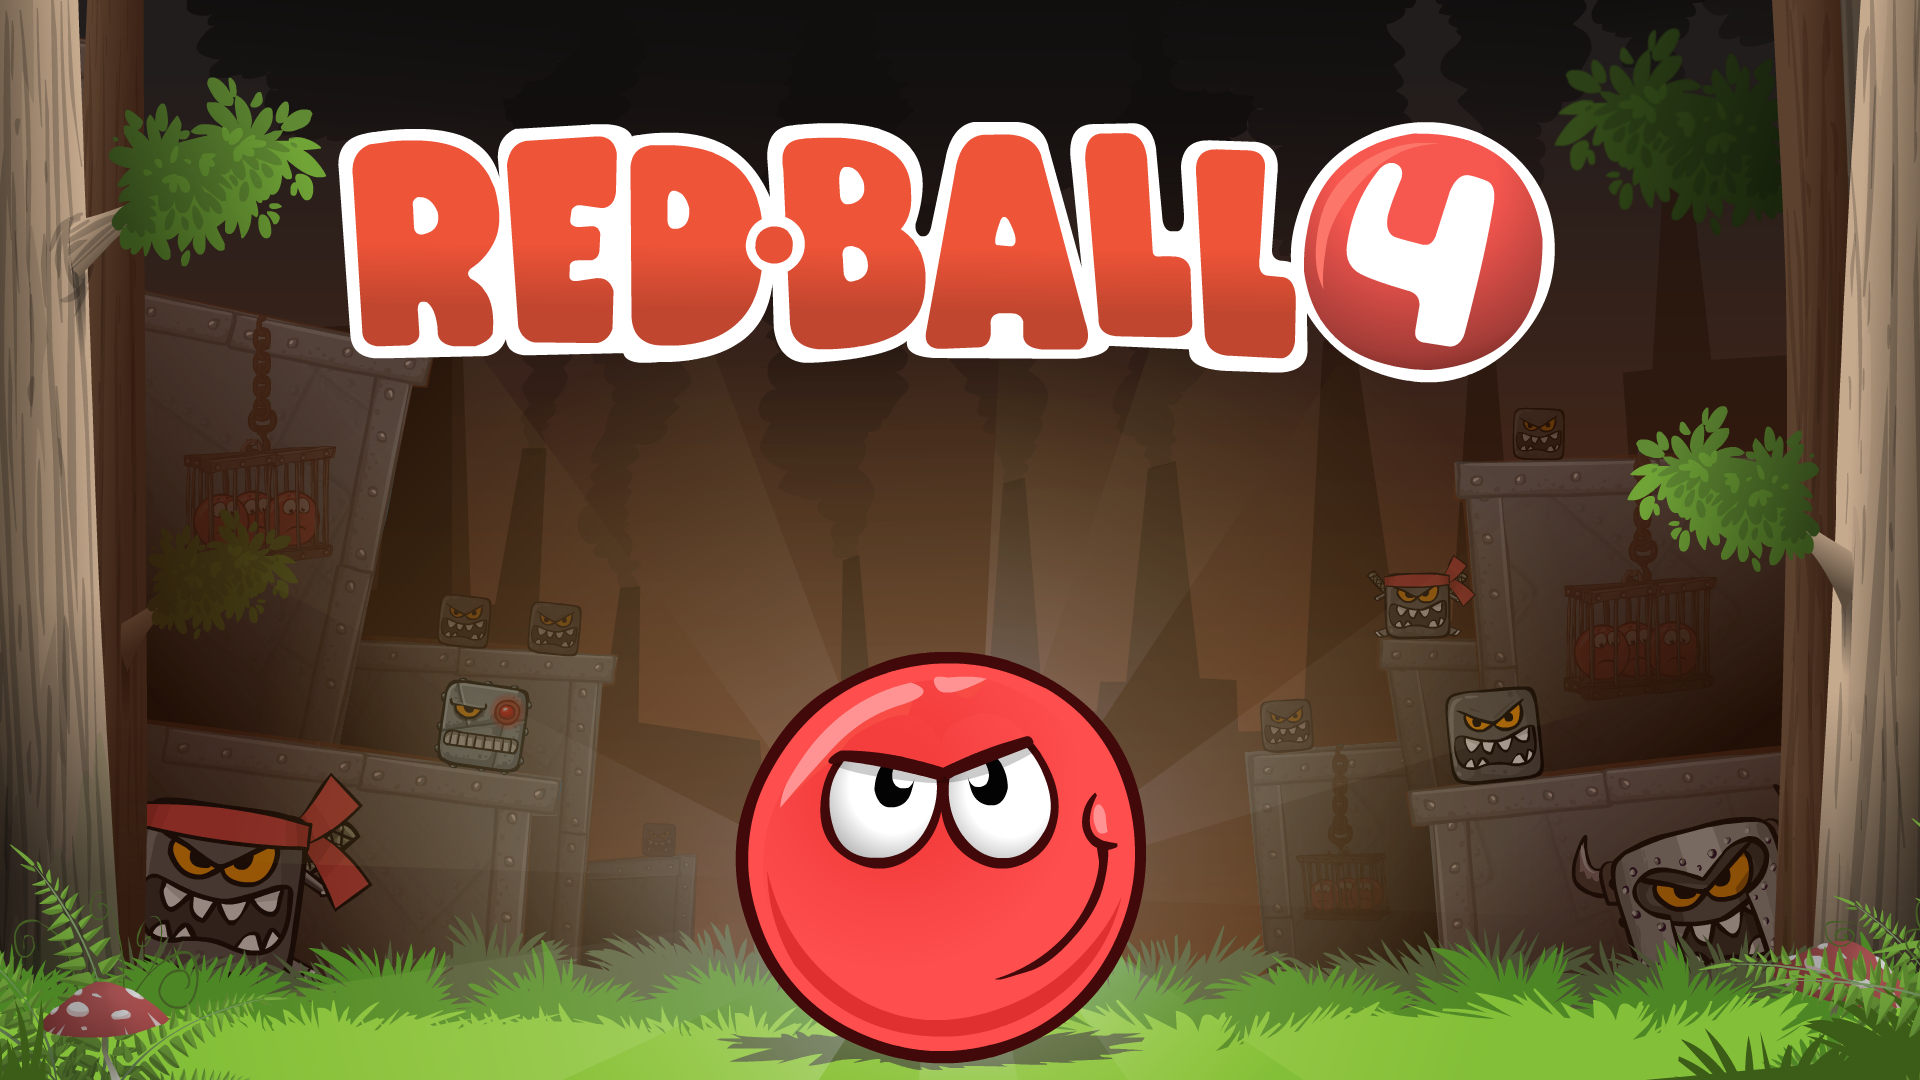 (c) Playredball4.com